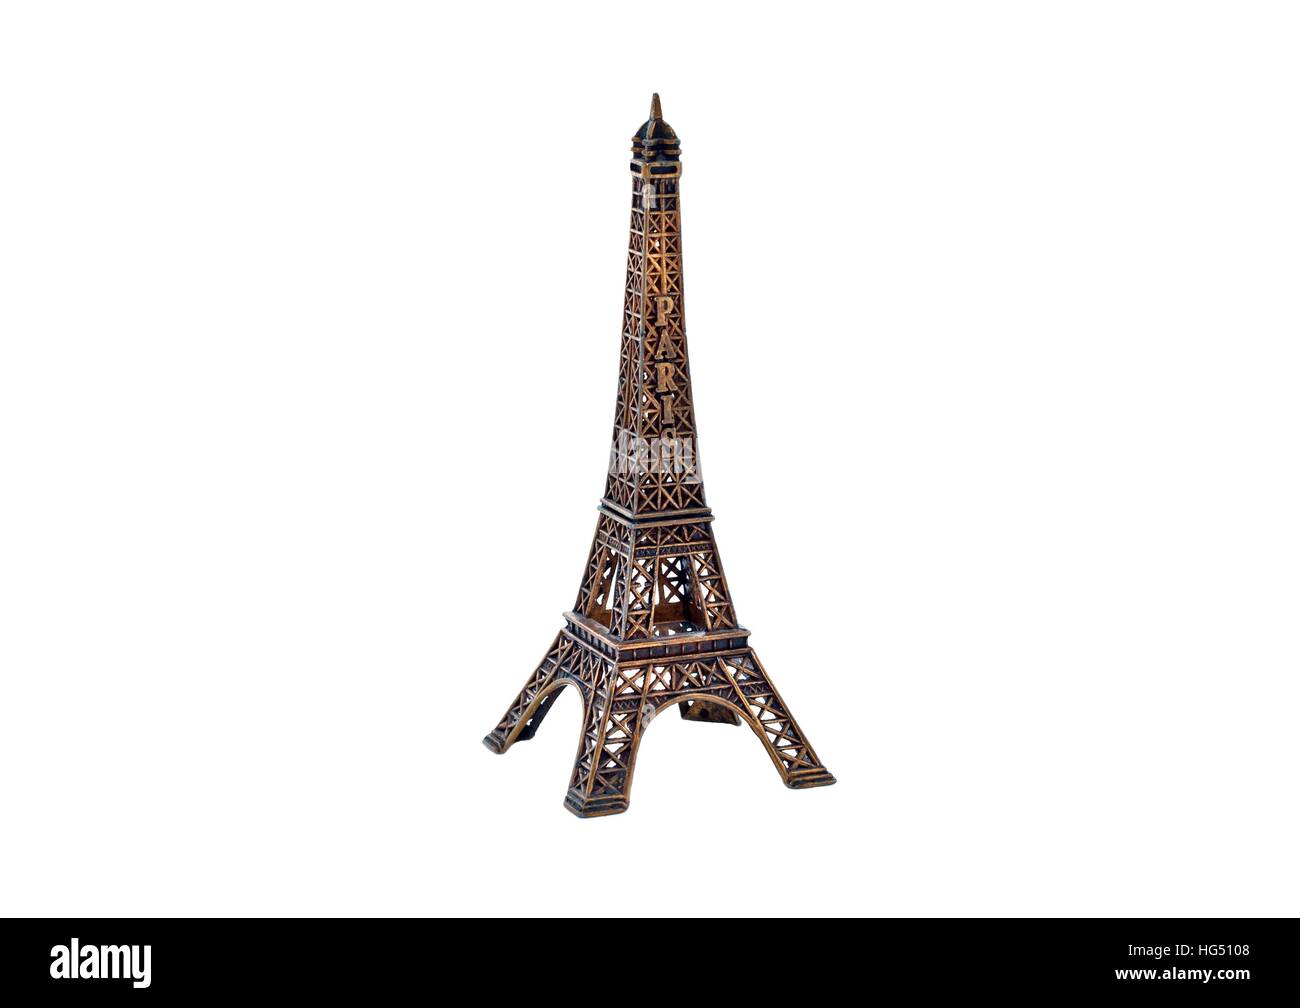 La tour Eiffel, souvenir, isolé sur fond blanc Banque D'Images